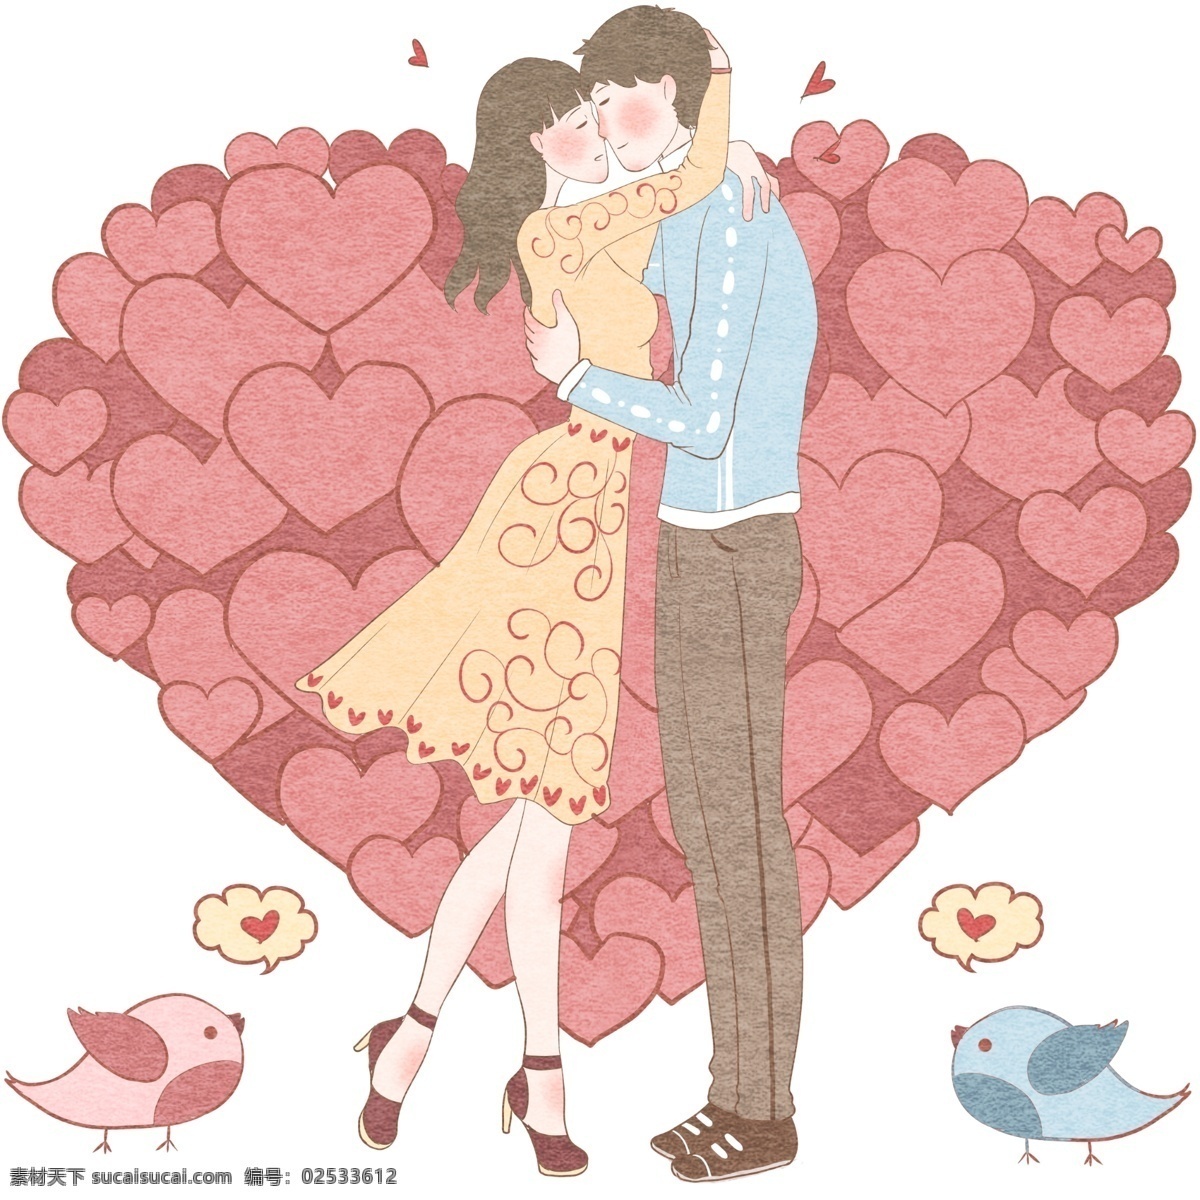 大型 拼接 红色 爱心 幸福 情侣 情人节 蓝色小鸟 云朵对话框 红色爱心 亲吻 撒狗粮 粉色小鸟 浪漫甜蜜